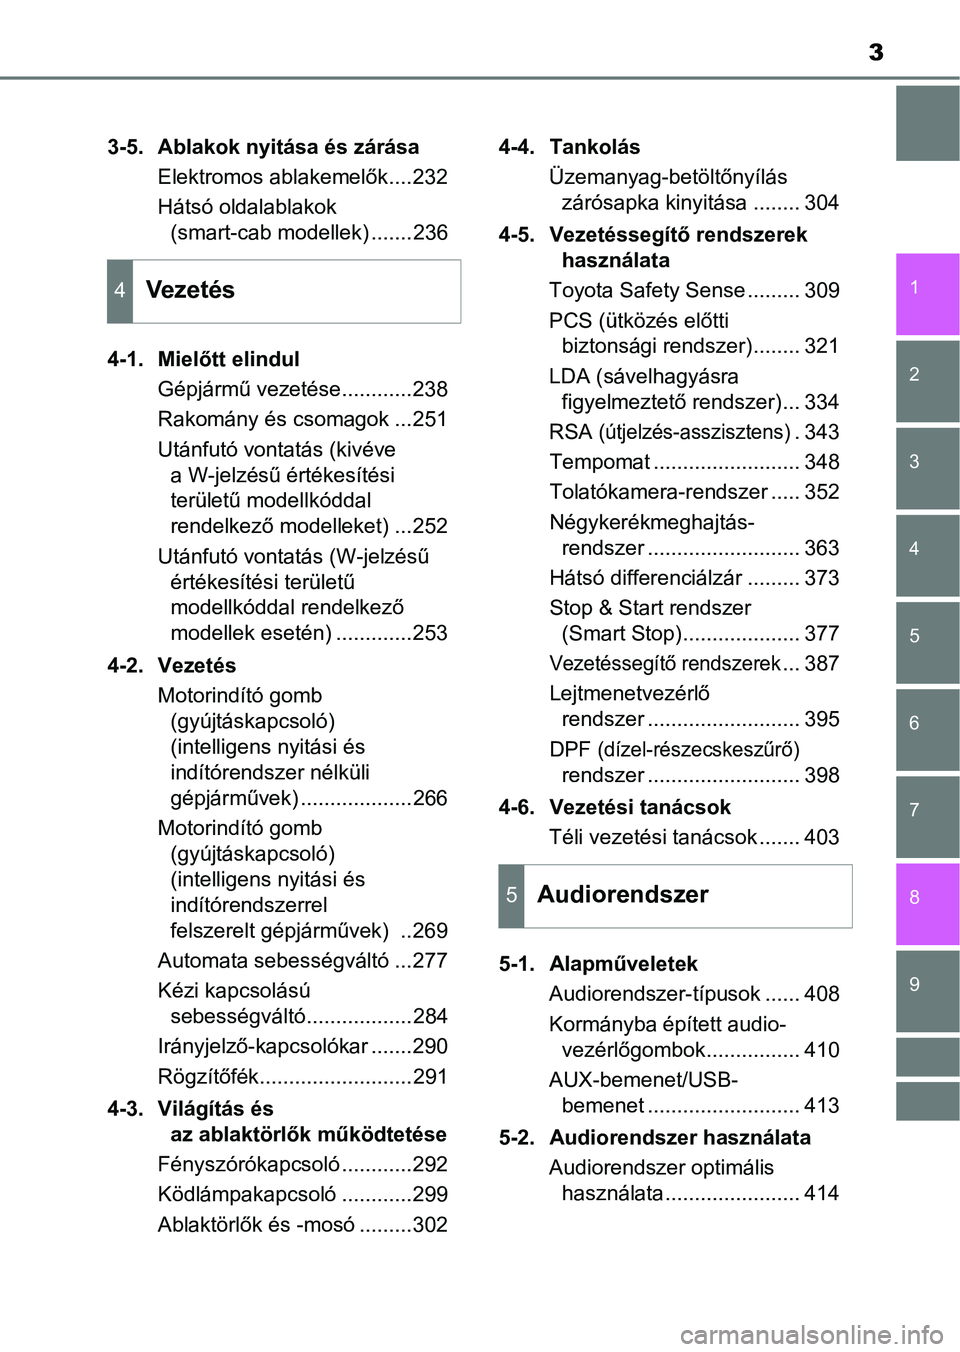 TOYOTA HILUX 2019  Kezelési útmutató (in Hungarian) 3
1
9 8 6 5
4
3
2
7
3-5. Ablakok nyitása és zárásaElektromos ablakemelők....232
Hátsó oldalablakok (smart-cab modellek) .......236
4-1. Mielőtt elindul Gépjármű vezetése............238
Rak